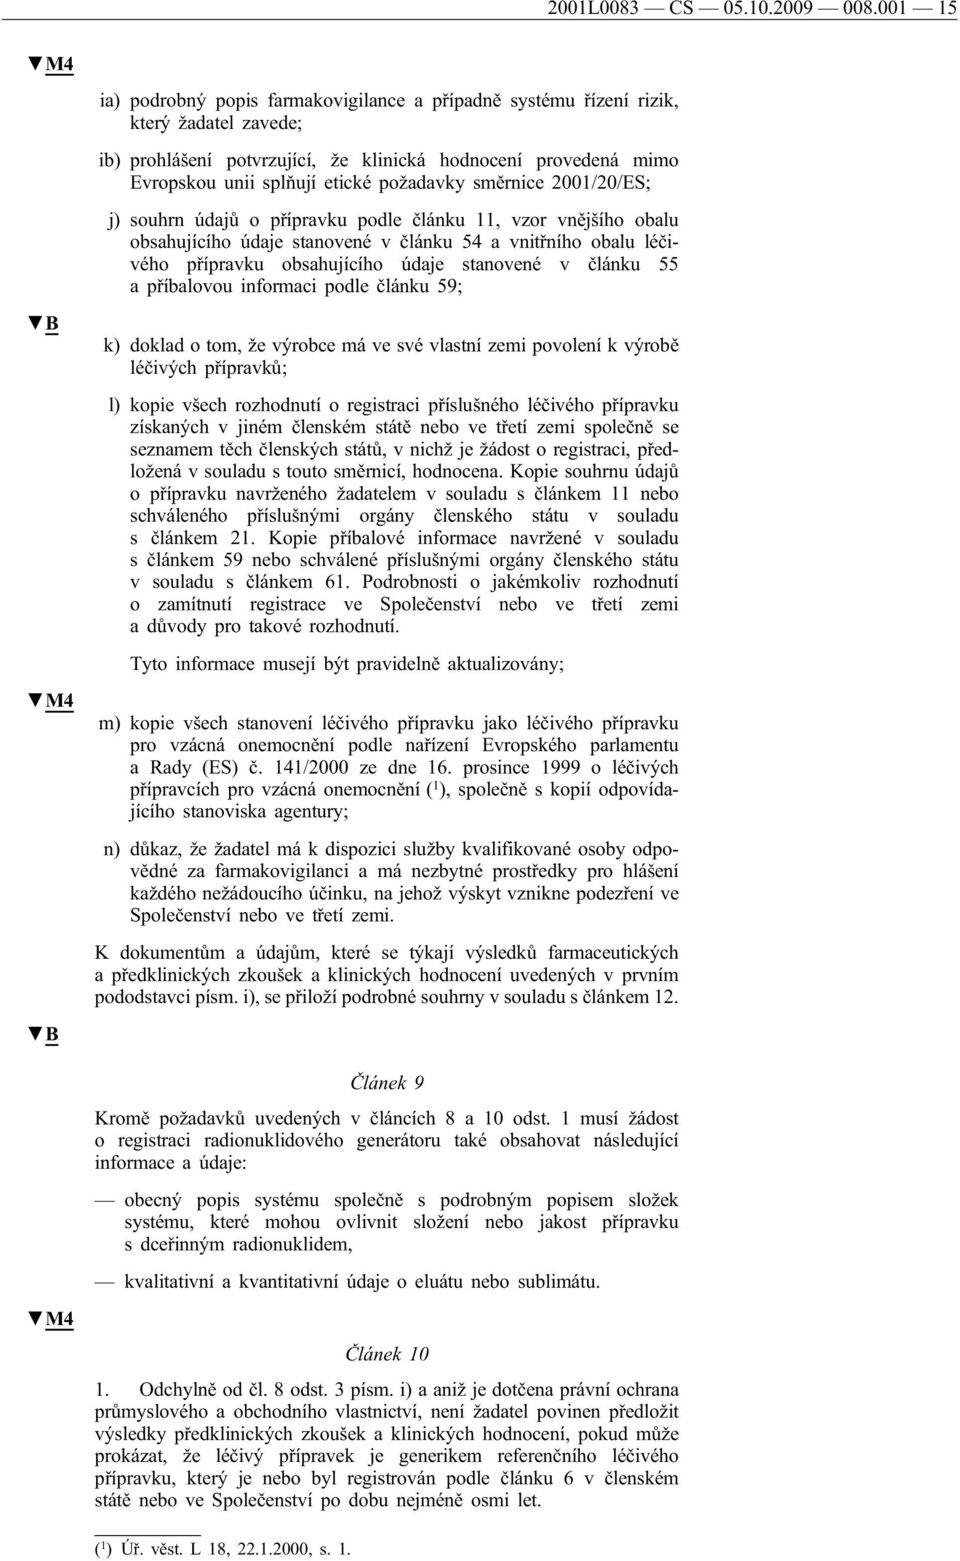 požadavky směrnice 2001/20/ES; j) souhrn údajů o přípravku podle článku 11, vzor vnějšího obalu obsahujícího údaje stanovené v článku 54 a vnitřního obalu léčivého přípravku obsahujícího údaje